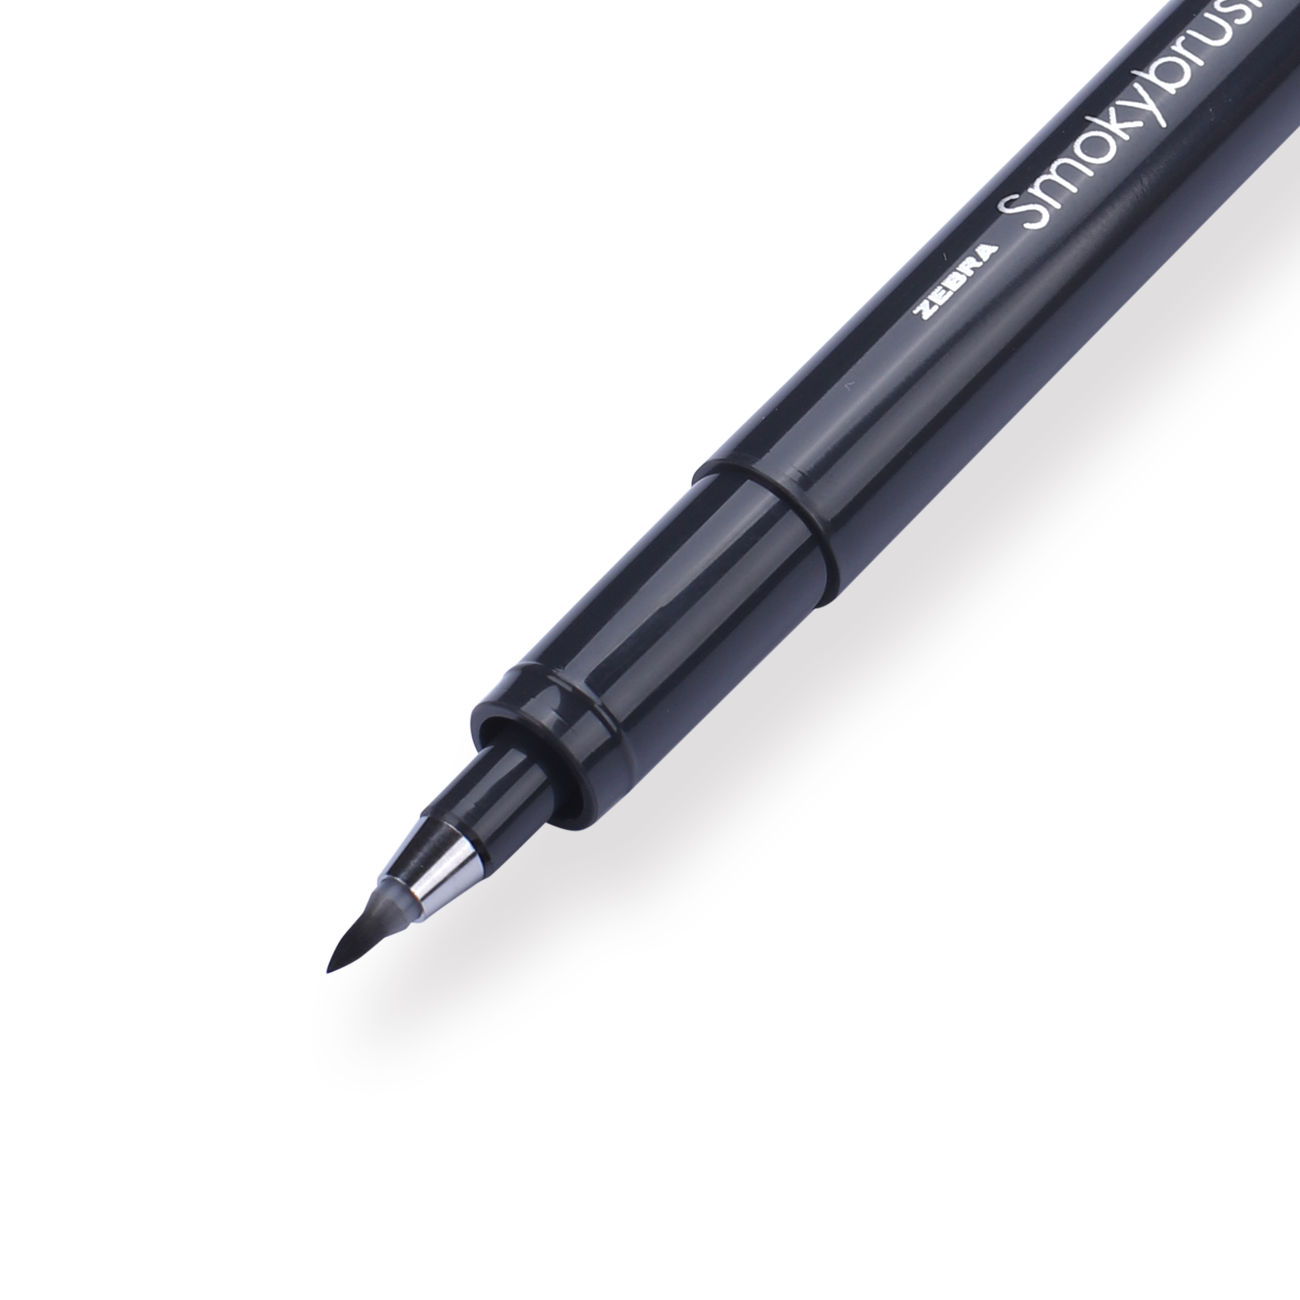 Zebra Smoky Brush Pen - Set of 5 - A - Stationery Pal